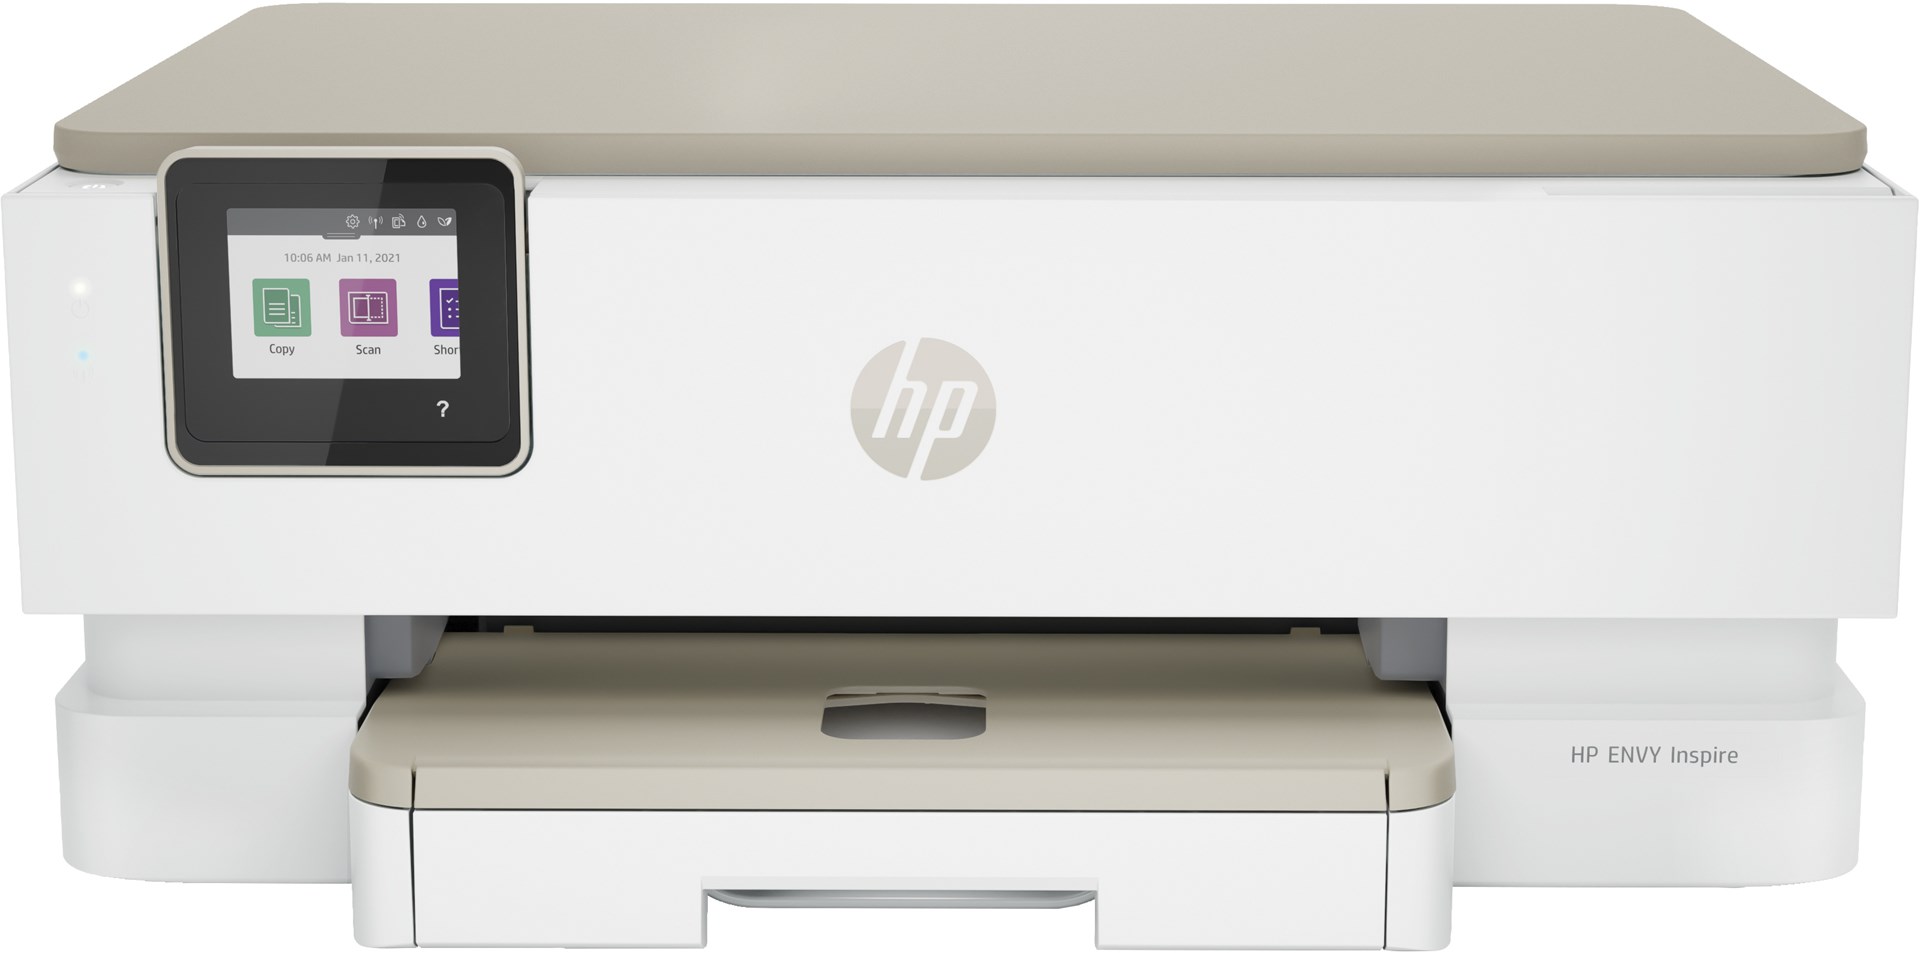 HP ENVY Tiskárna Inspire 7220e All-in-One, Barva, Tiskárna pro Domů, Tisk, kopírování, skenování, Skenování do PDF